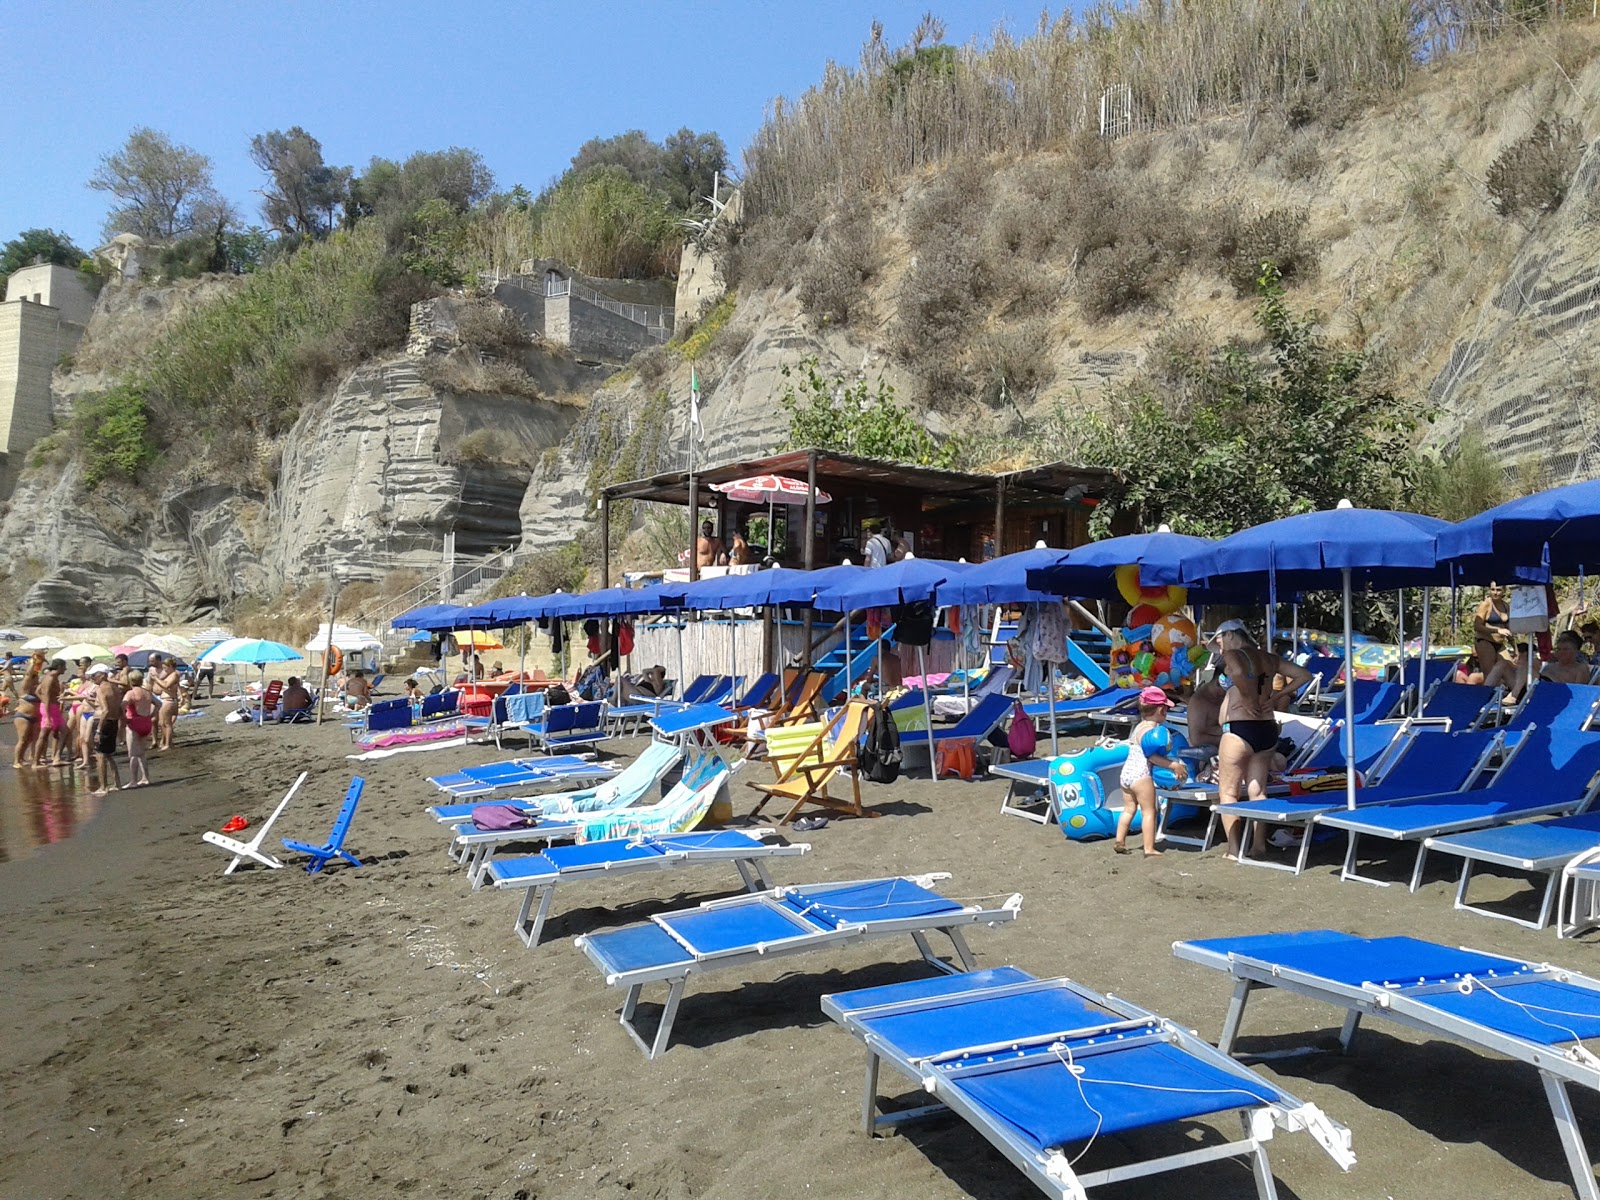 Foto van Spiaggia Chiaia met hoog niveau van netheid